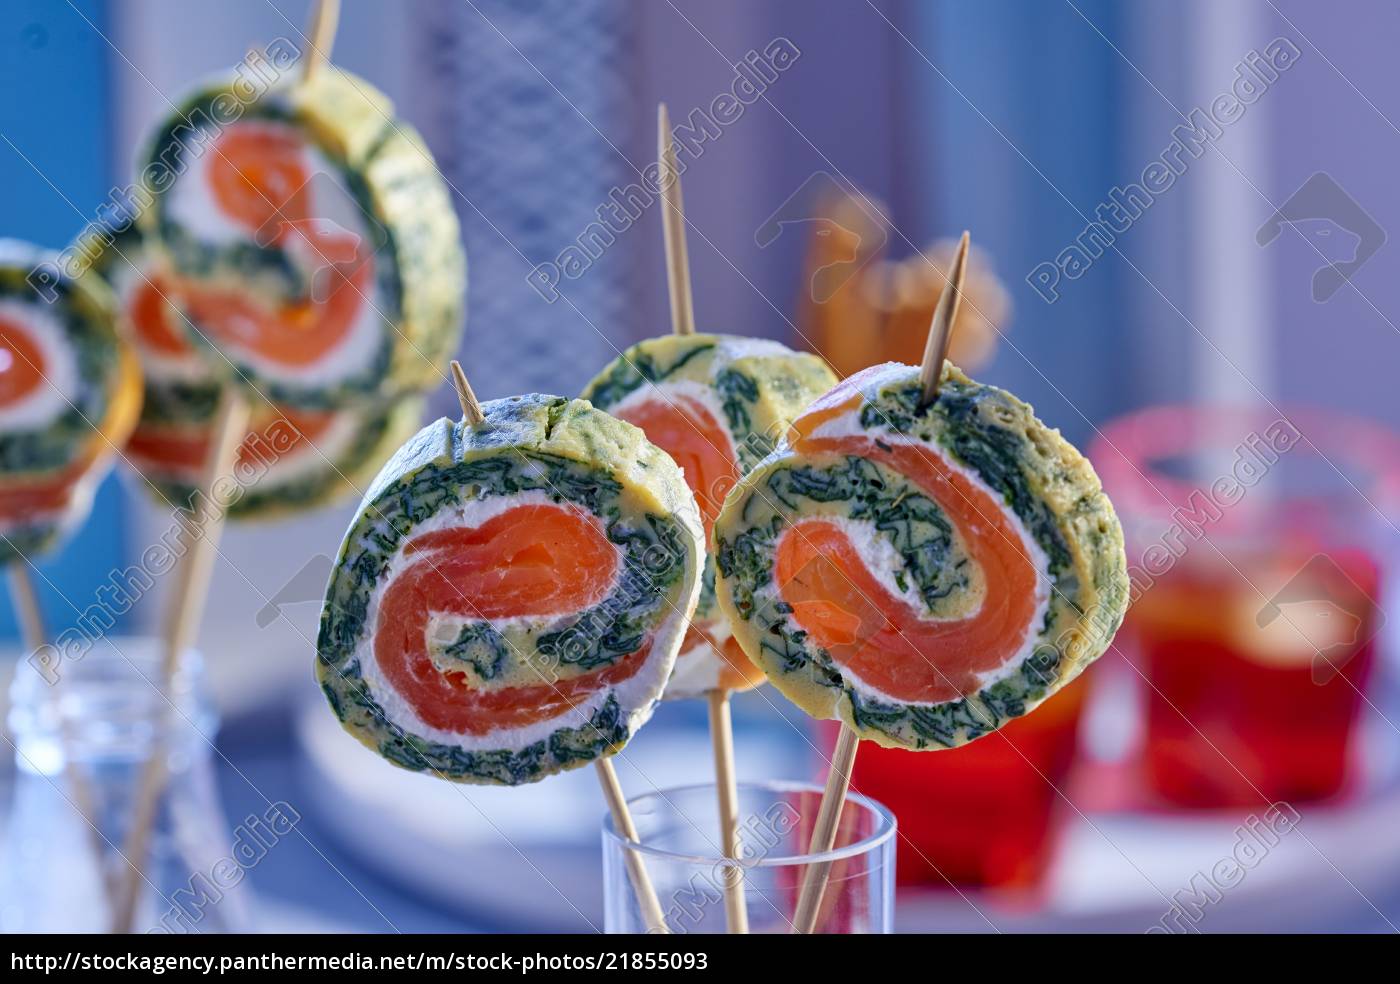 Omelette-Brötchen mit Wasabi und Räucherlachs - Stockfoto - #21855093 ...